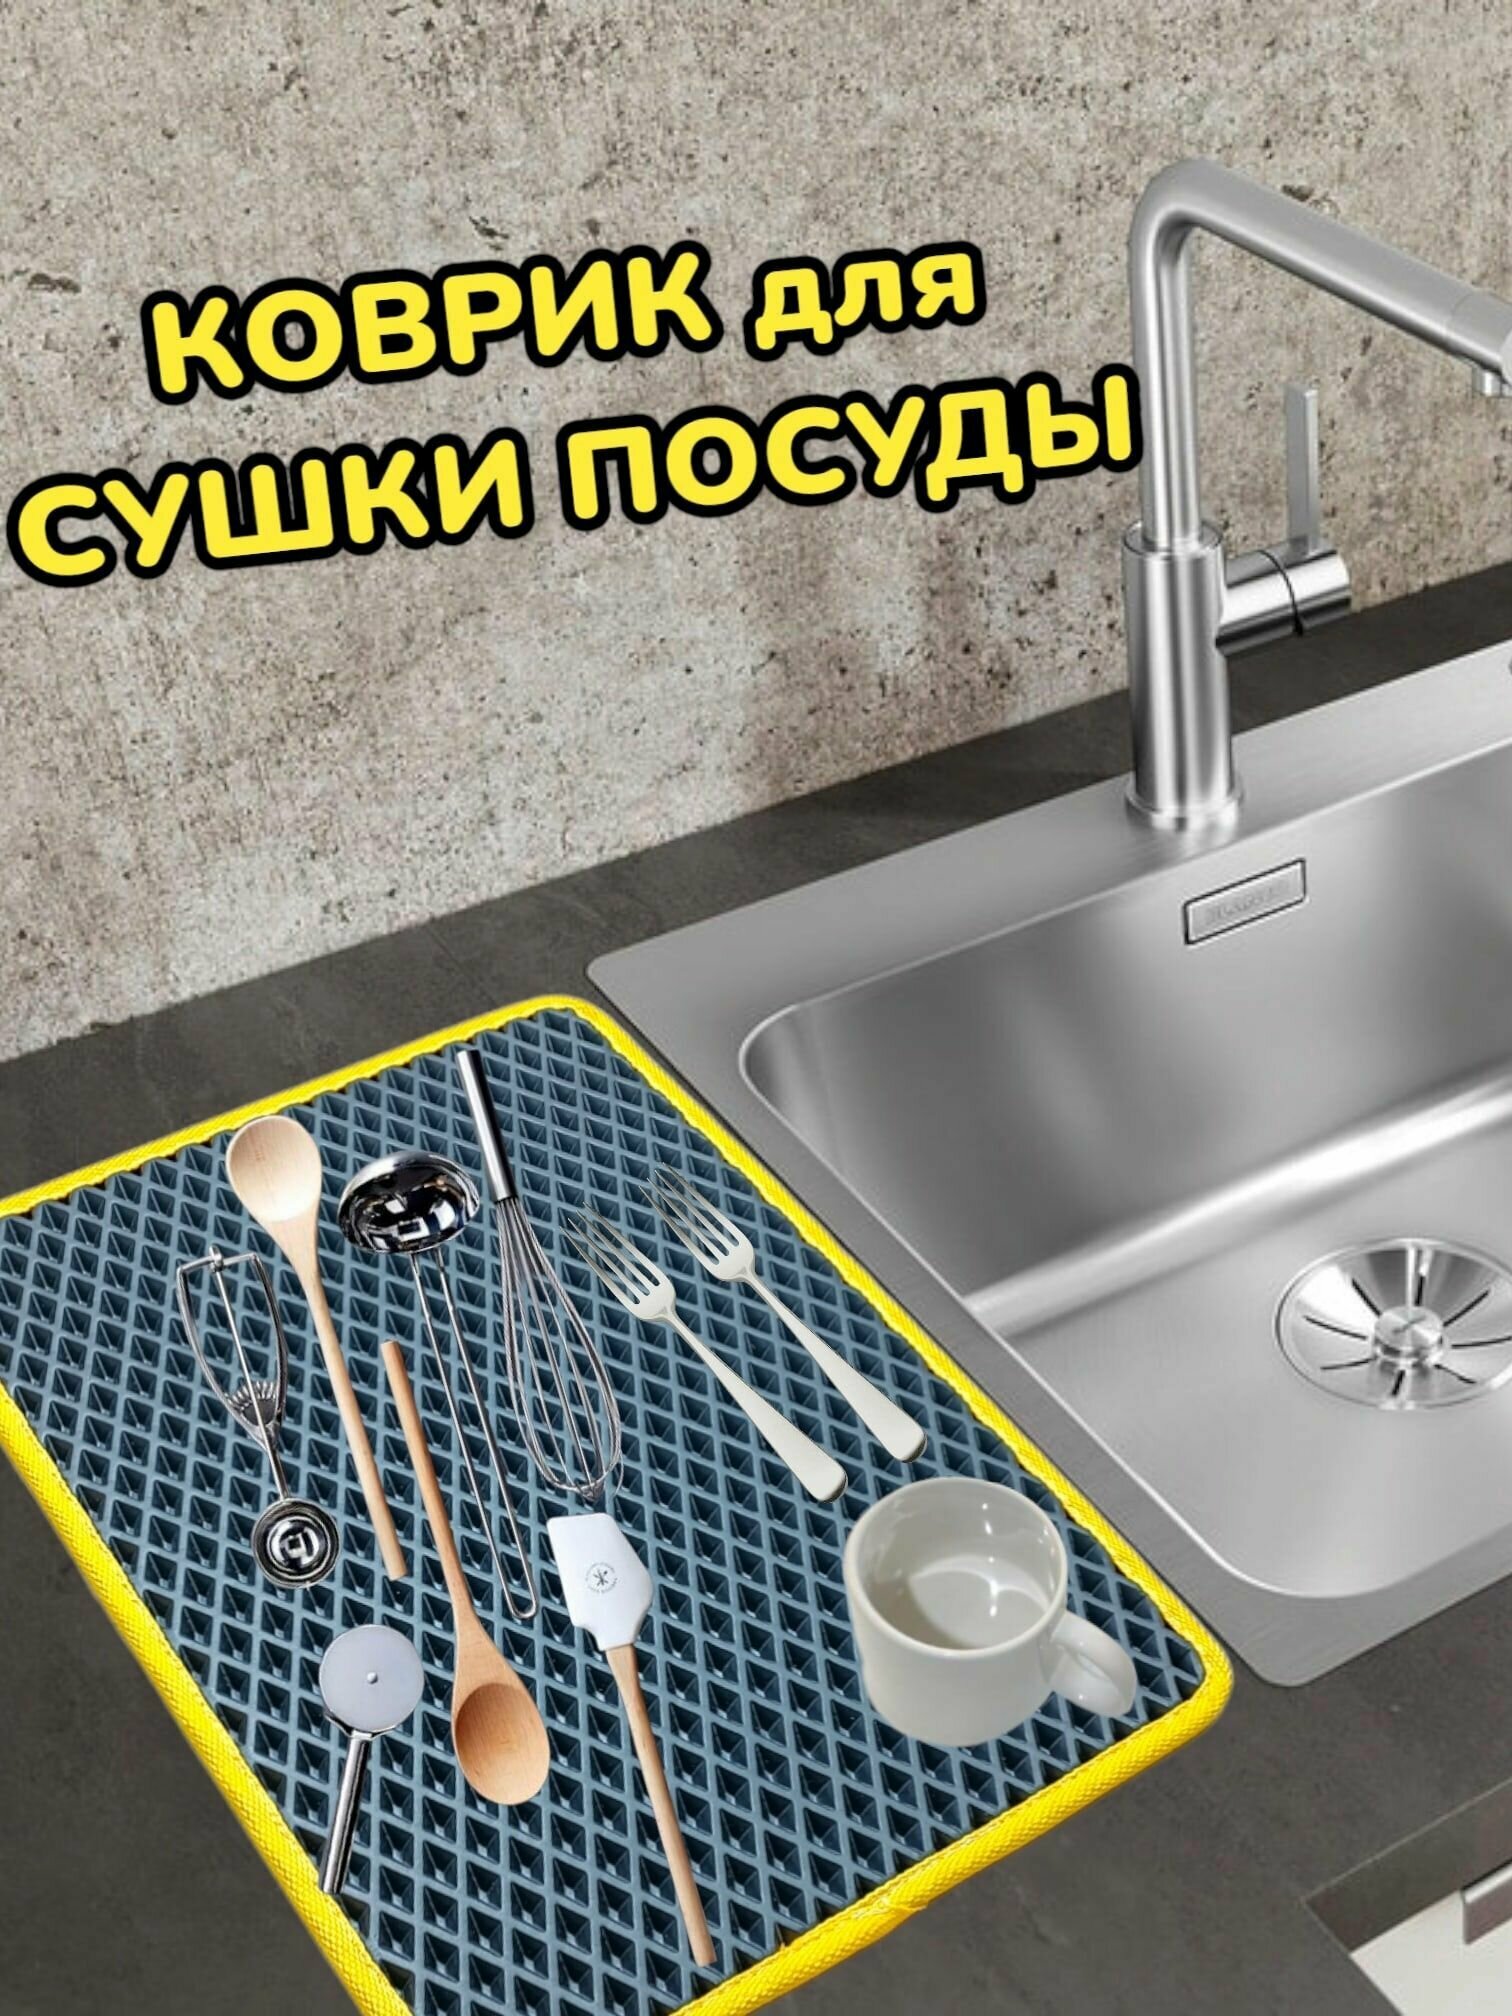 Коврик для сушки посуды / Поддон для сушилки посуды / 40 см х 20 см х 1 см / Графитовый с желтым кантом